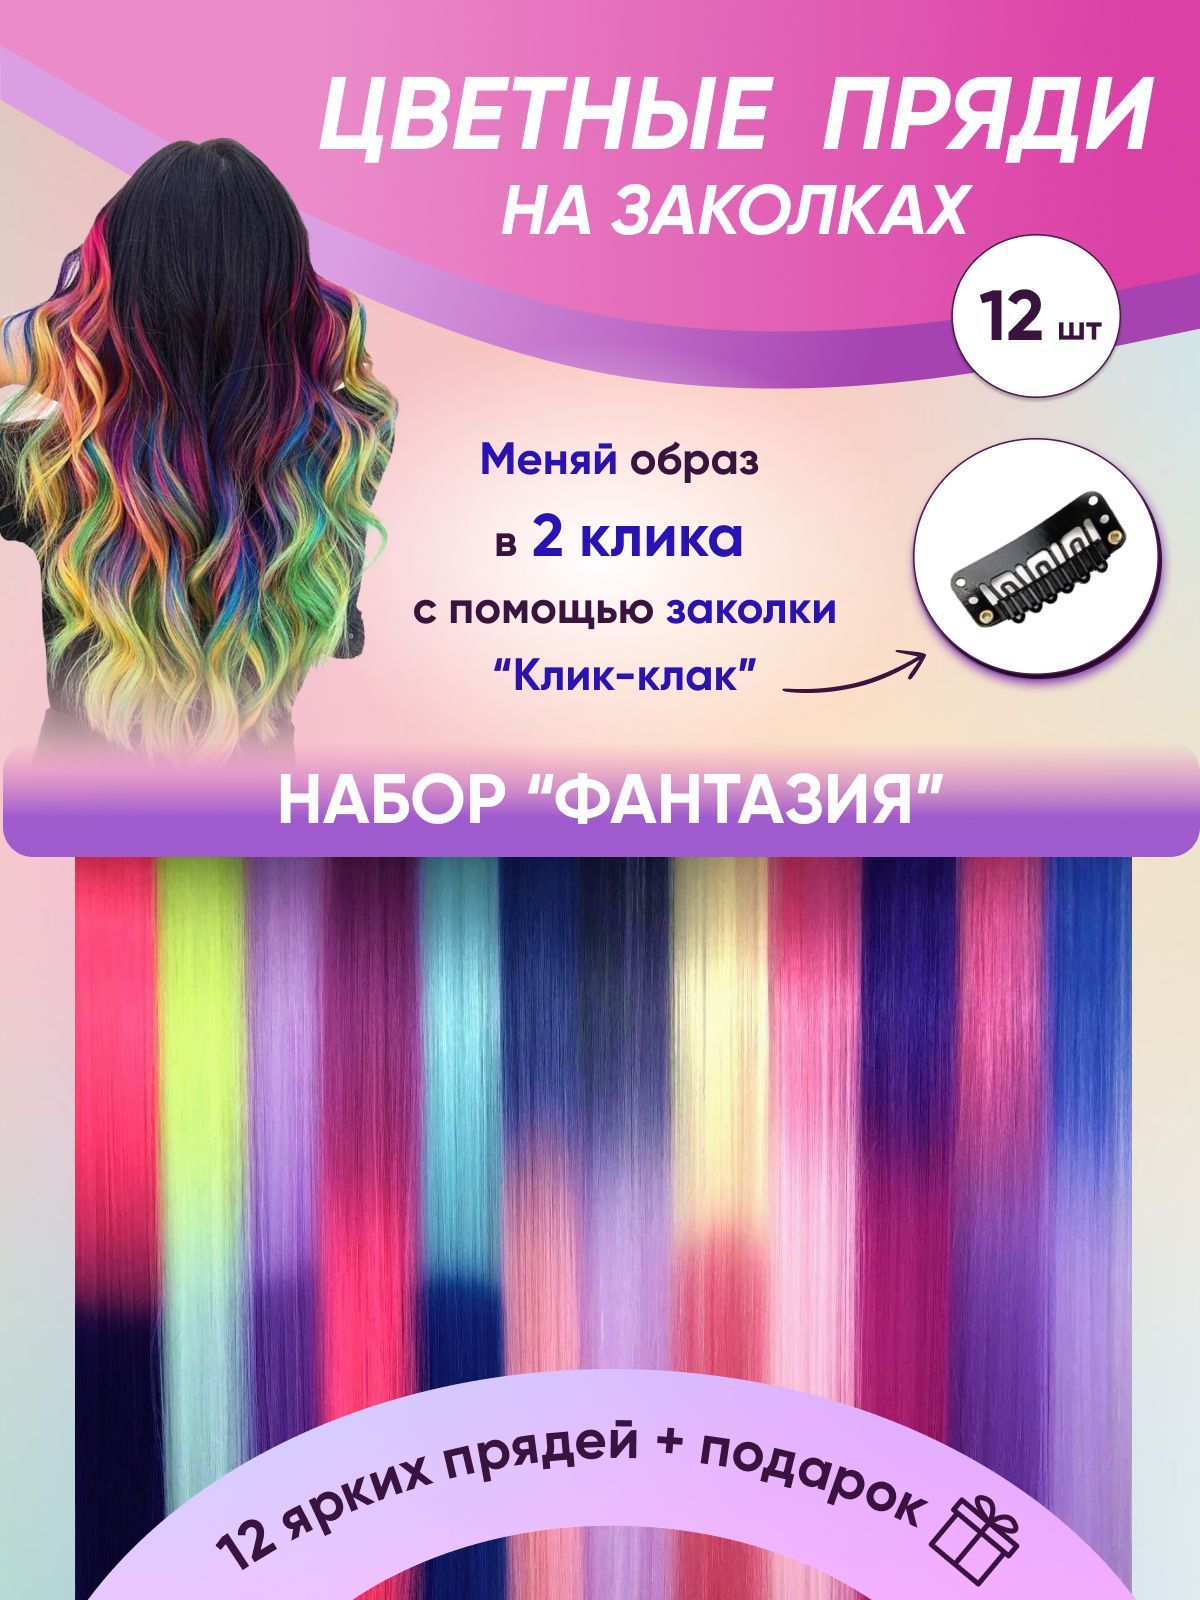 Цветные пряди на волосах (61 фото)